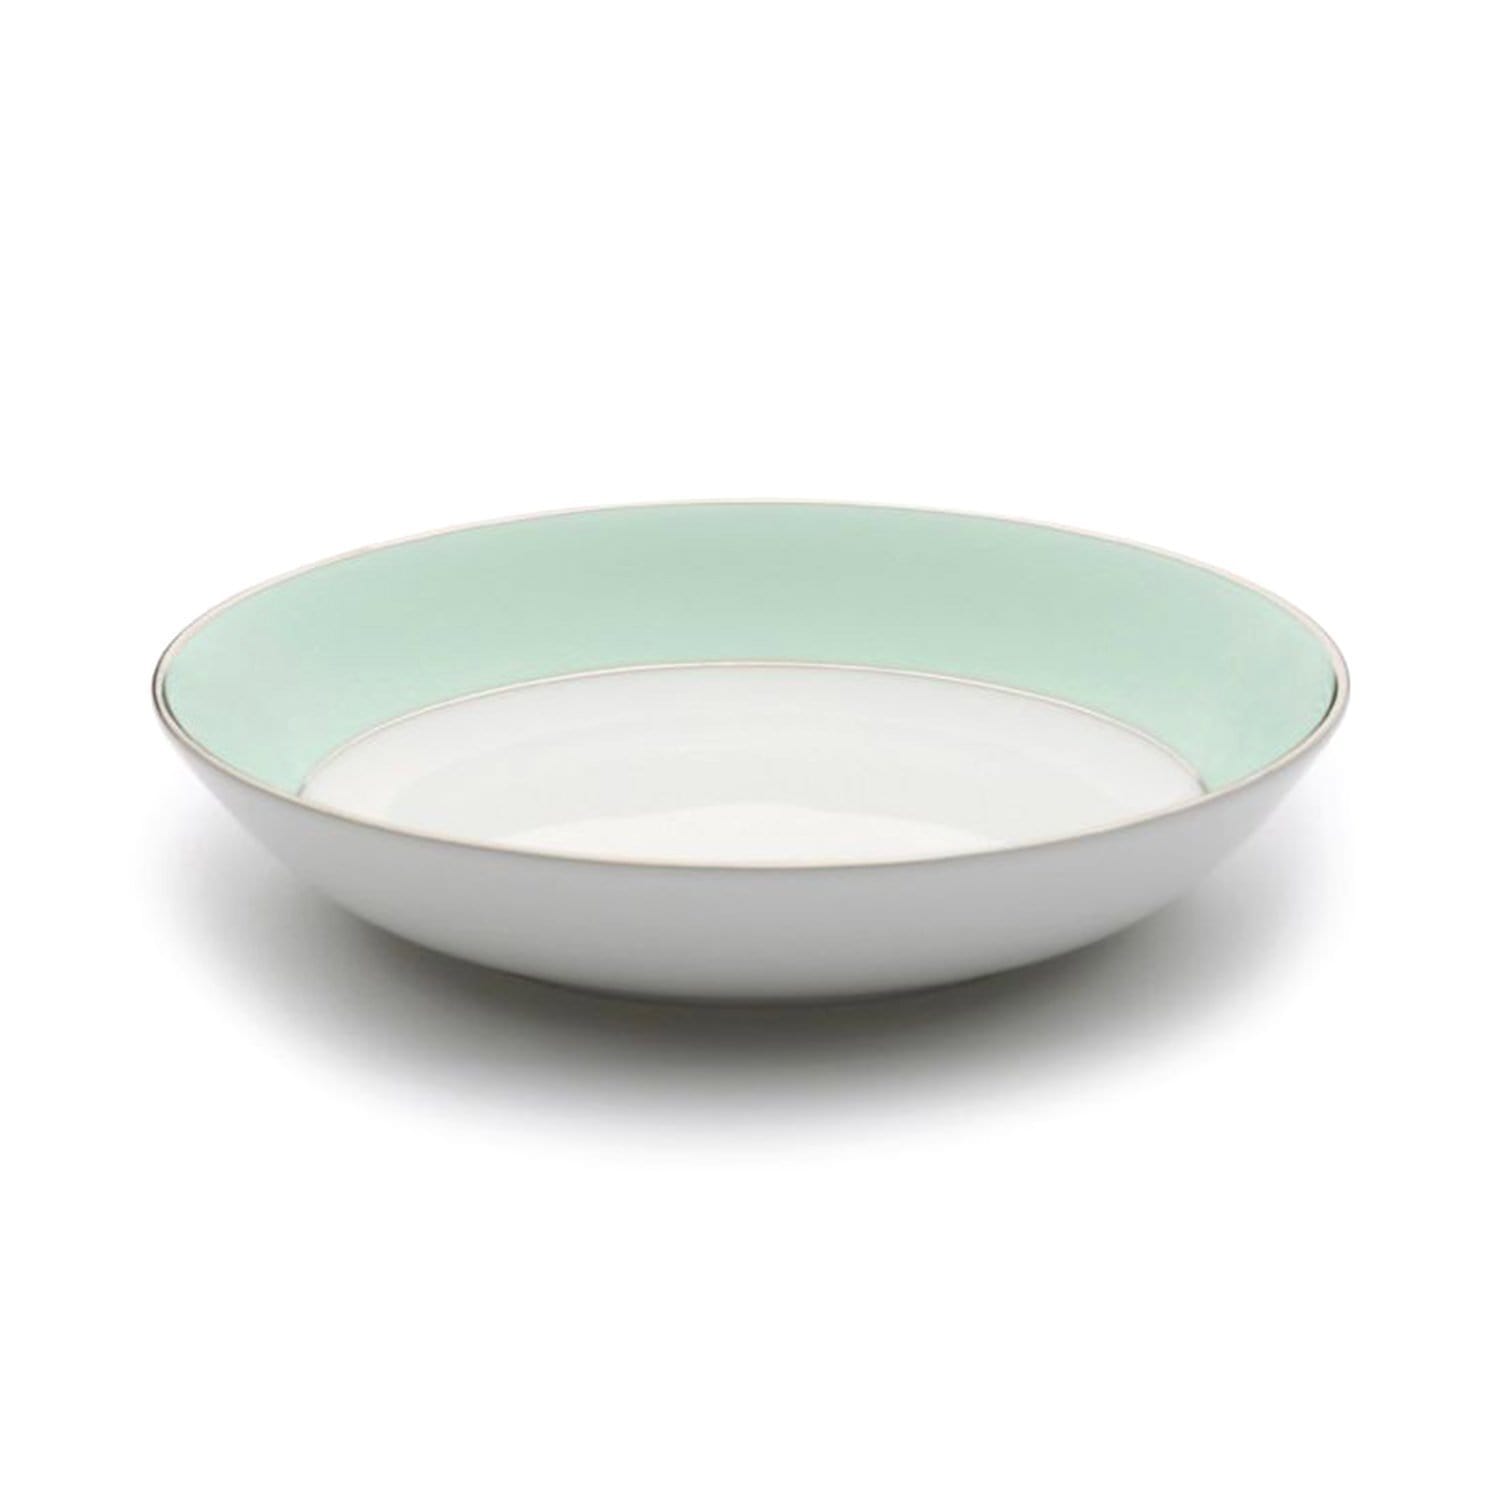 Dankotuwa Meldy Cereal Bowl - White and Green, 360 g - MELDYG-0507 - Jashanmal Home